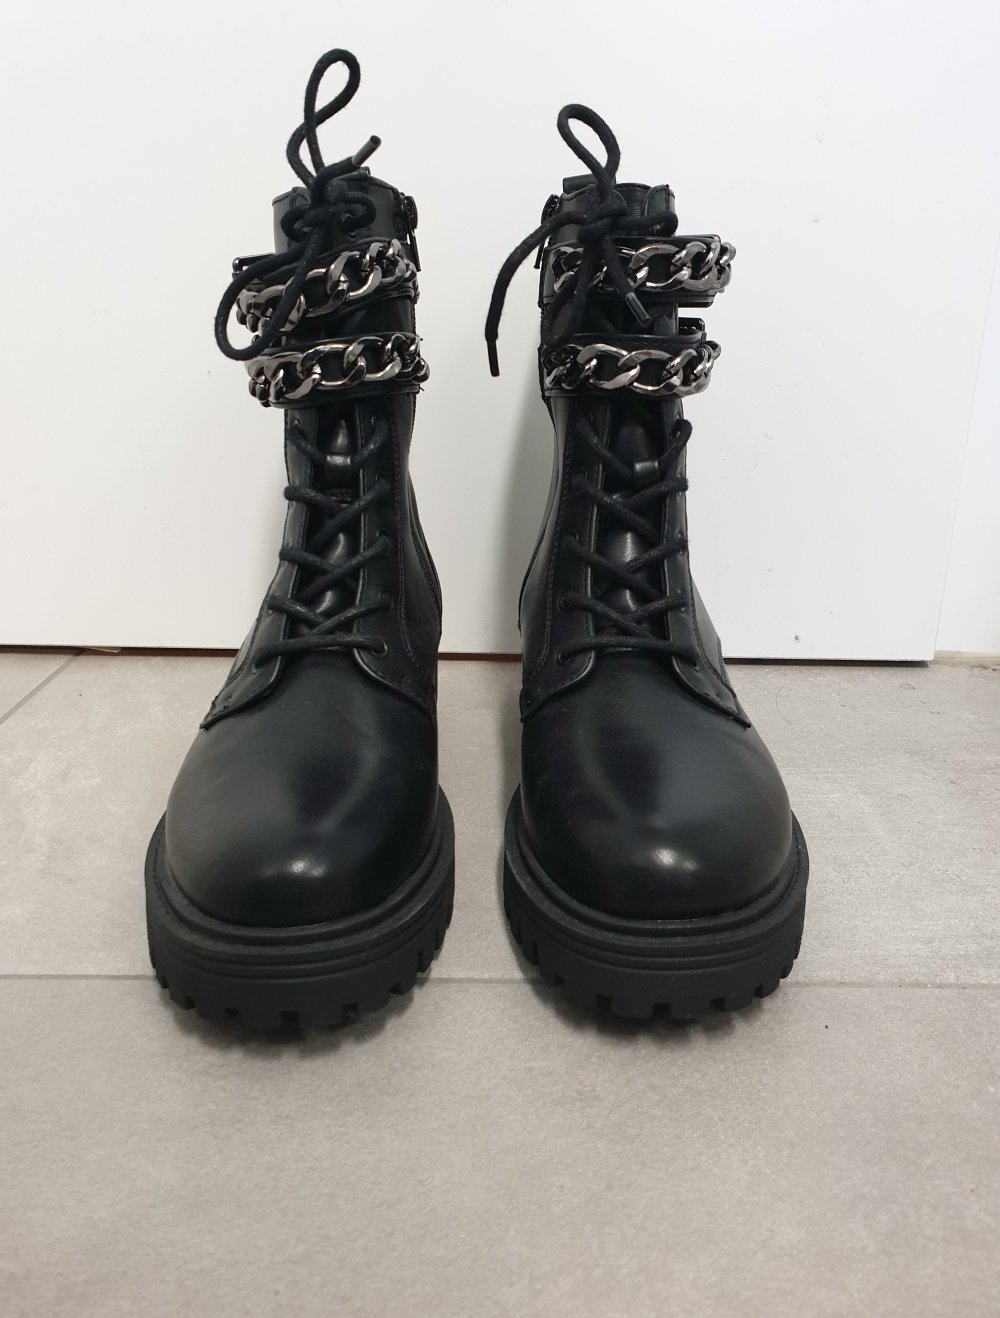 Neue schwarze Boots / Stiefeletten mit Ketten von Catwalk (Deichmann) in 38